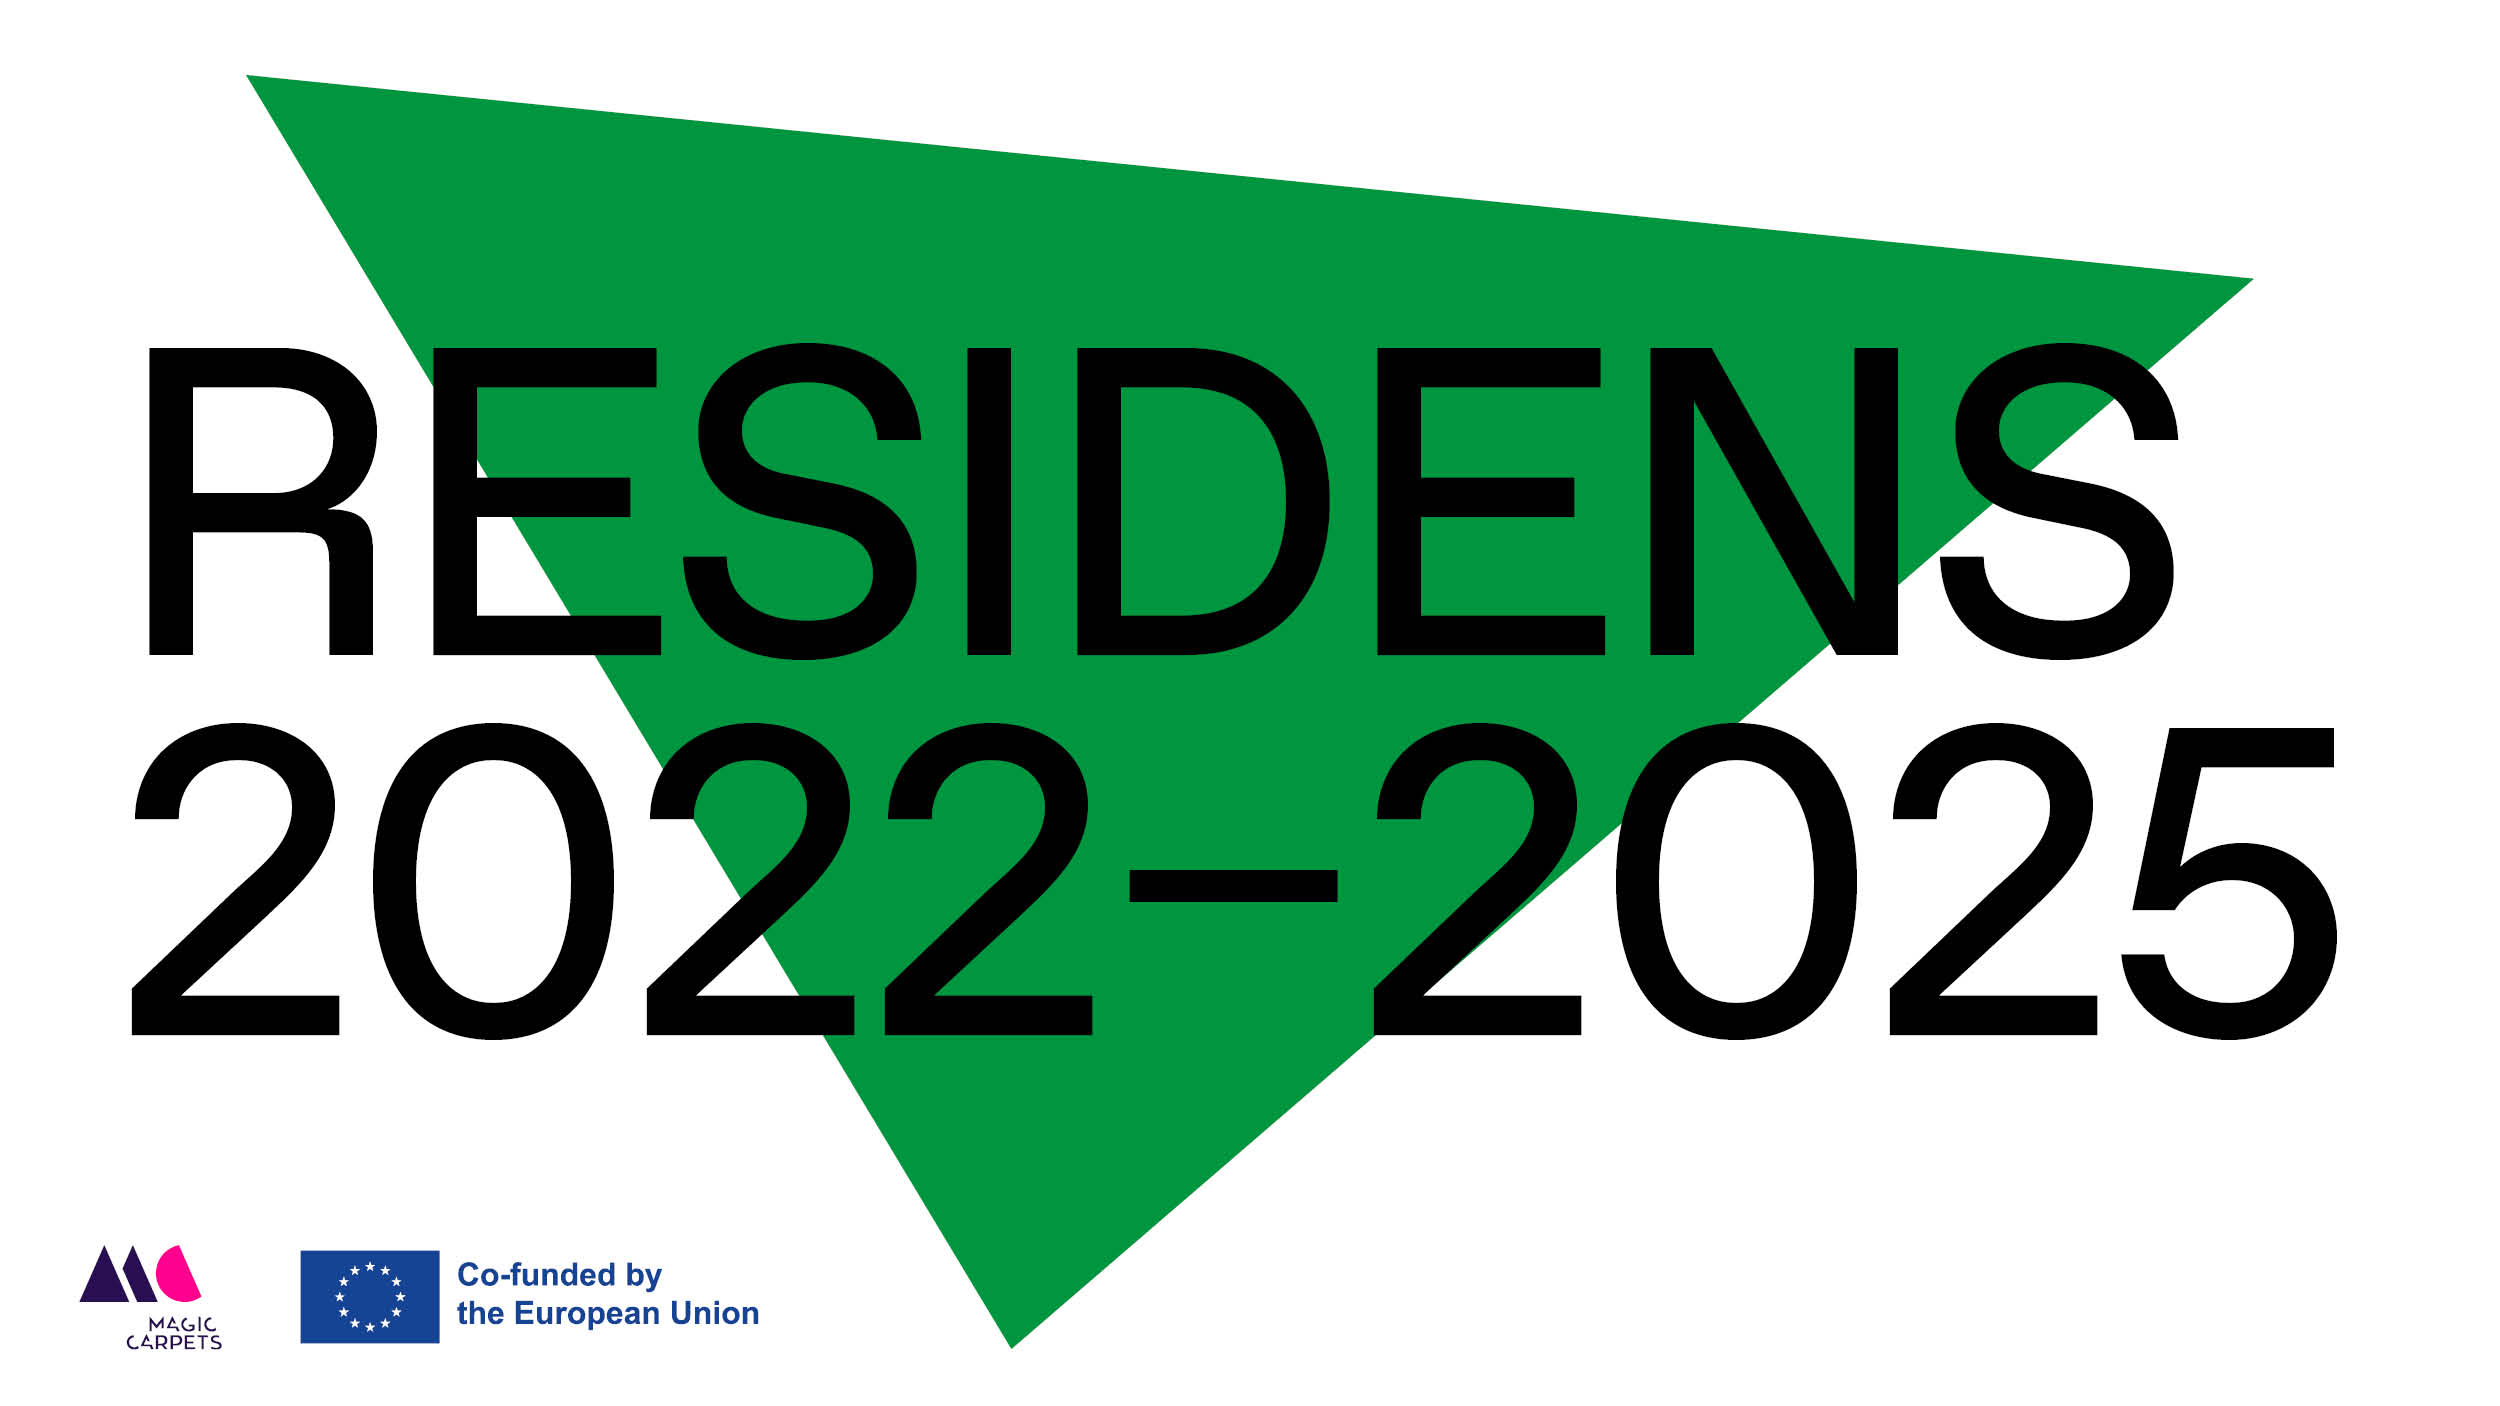 Svart text över en grön triangel, bakgrunden är vit. Texten lyder: Residens: 2022-2025